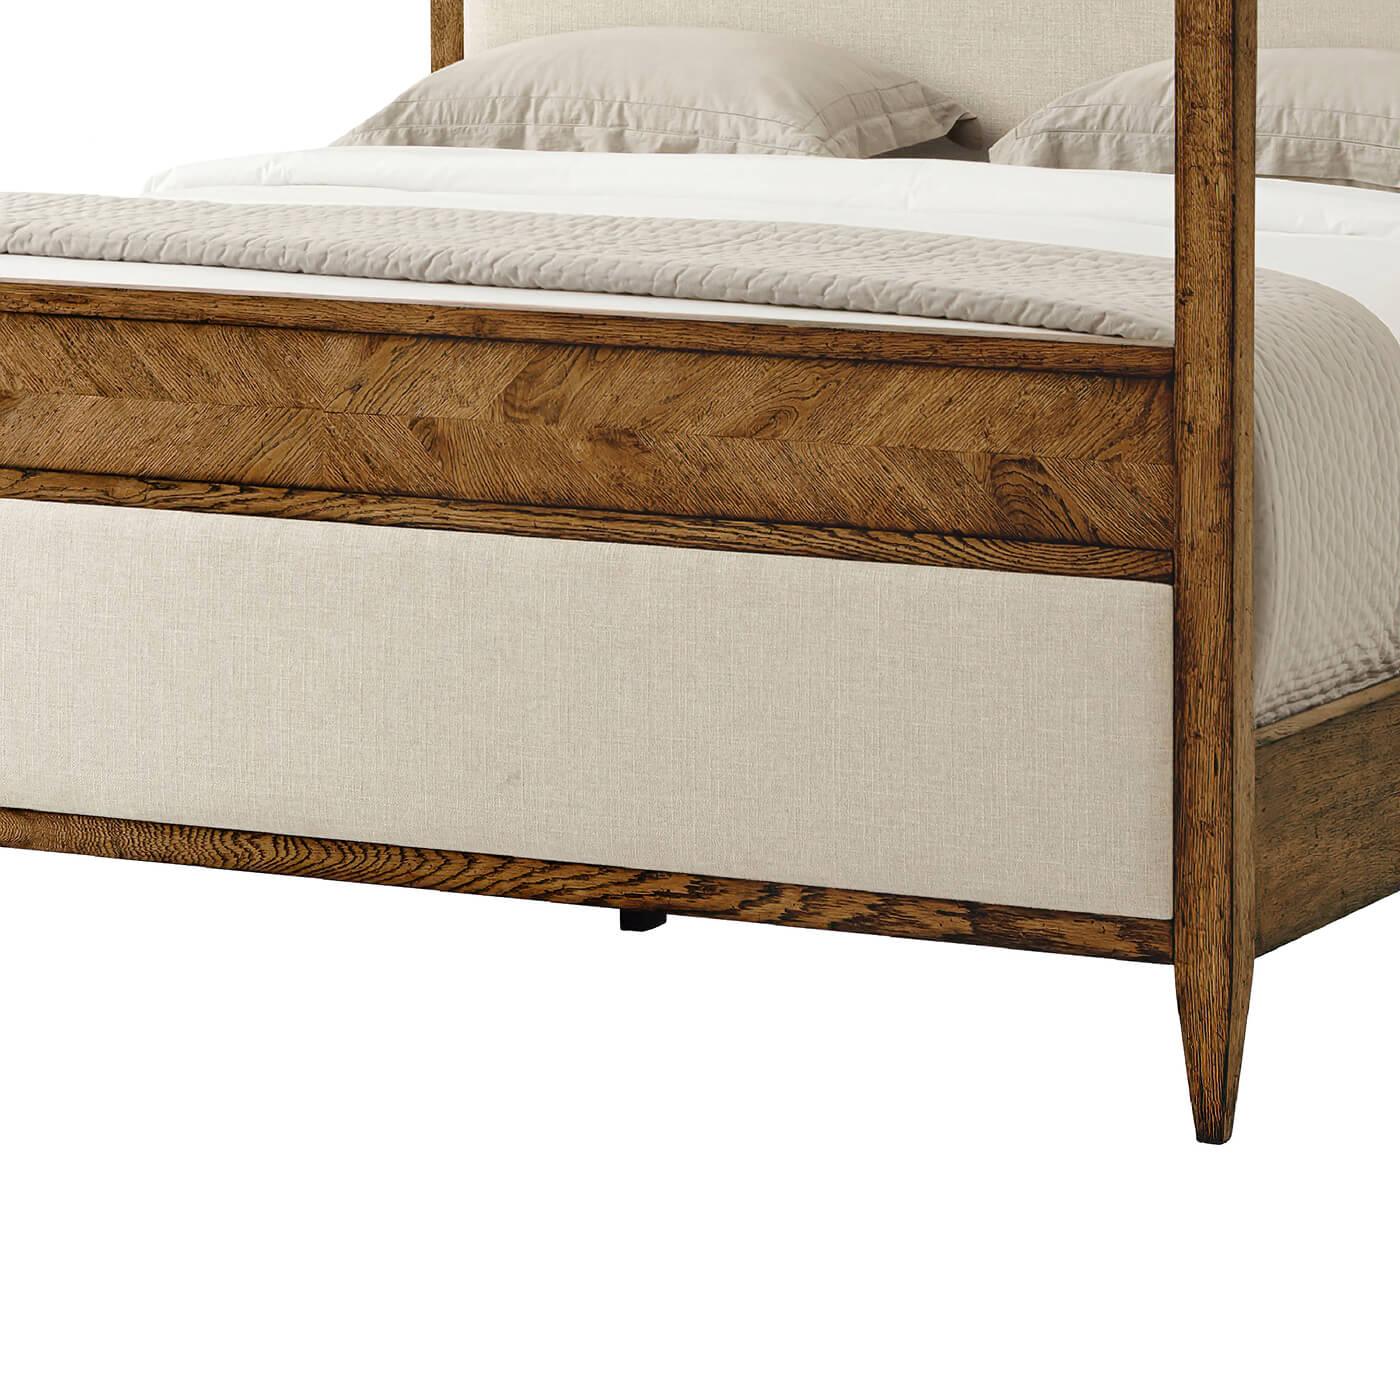 Un lit king à baldaquin de style rustique moderne, fabriqué en chêne avec une finition Dusk. Ce lit magnifiquement conçu présente des parties solides en chêne sculptées à la main et des détails de marqueterie à chevrons en miroir, mélangés à un